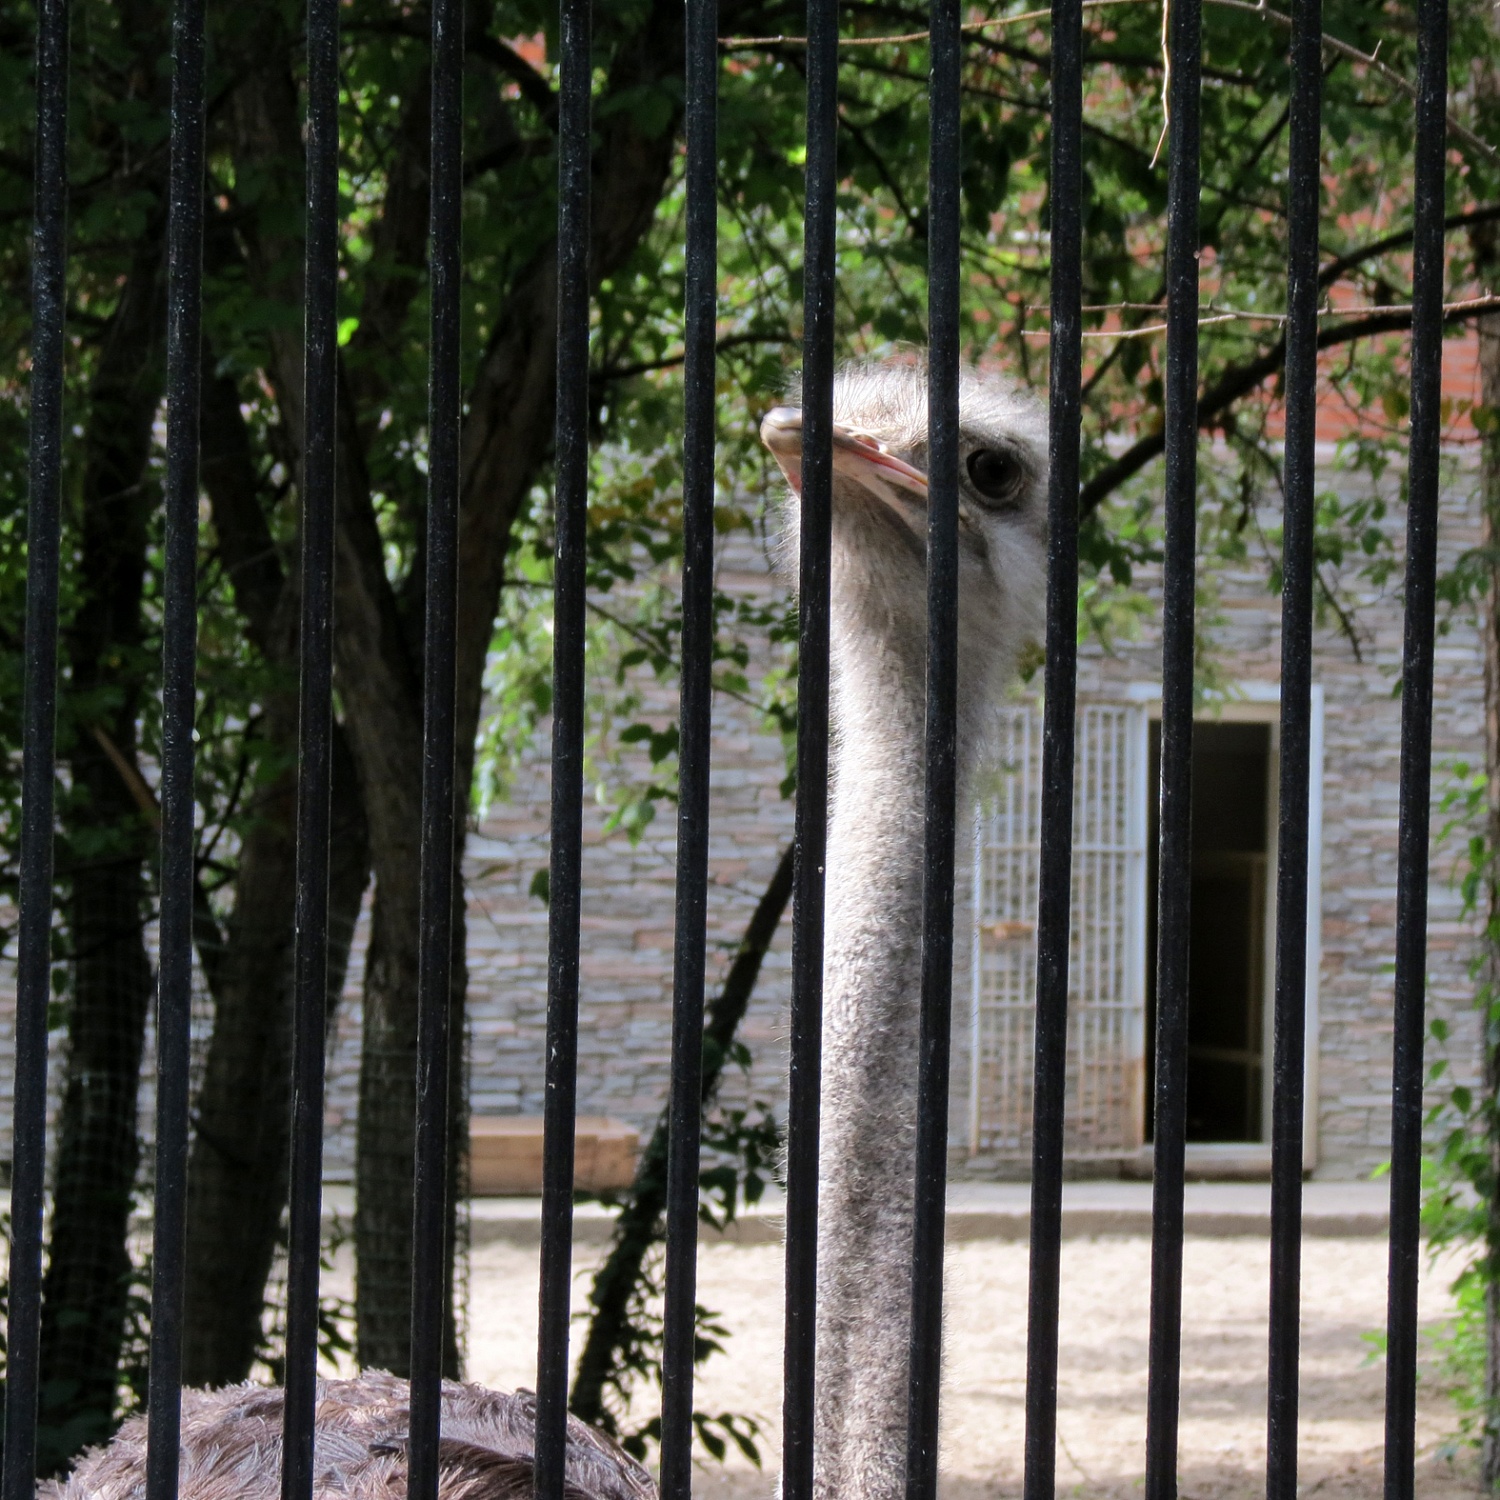 Компания БиоПро опекает африканских страусов Новосибирского зоопарка